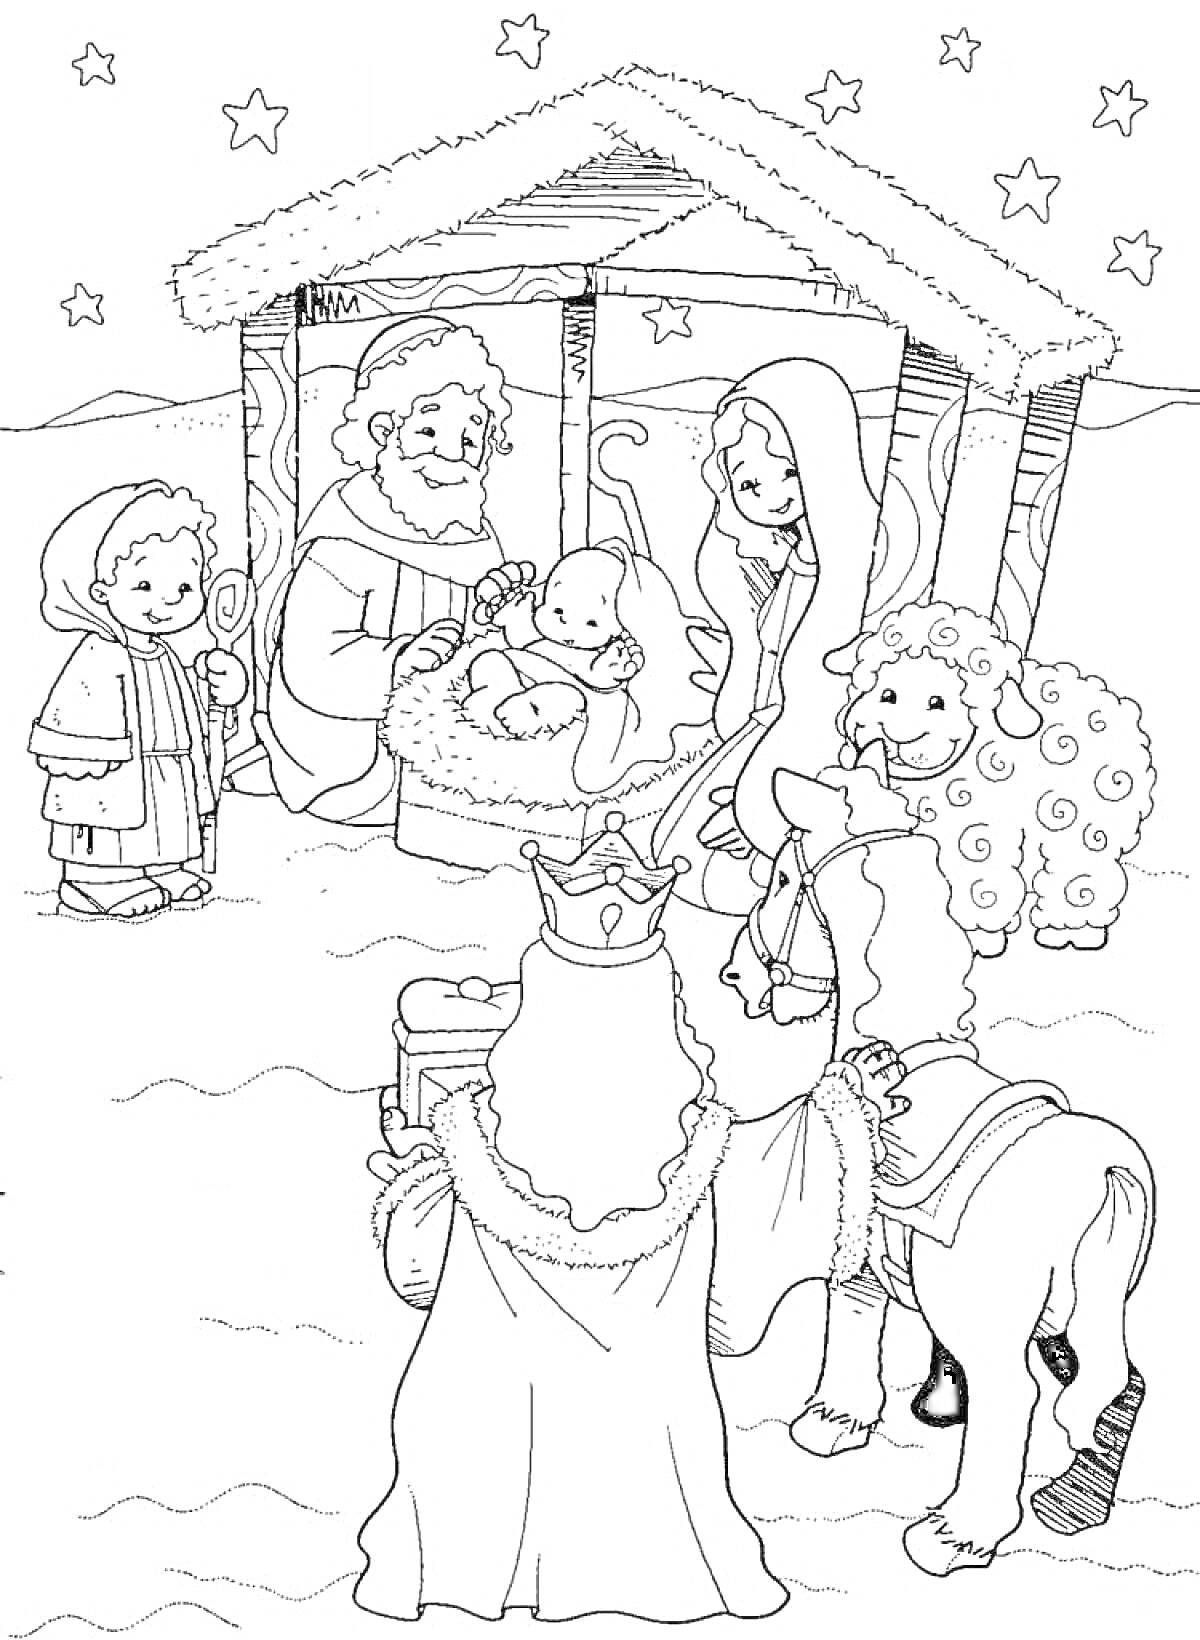 Рождественская сцена с младенцем Иисусом, Марией, Иосифом, пастухом, тремя волхвами и ангелами в хлеву под звездами.